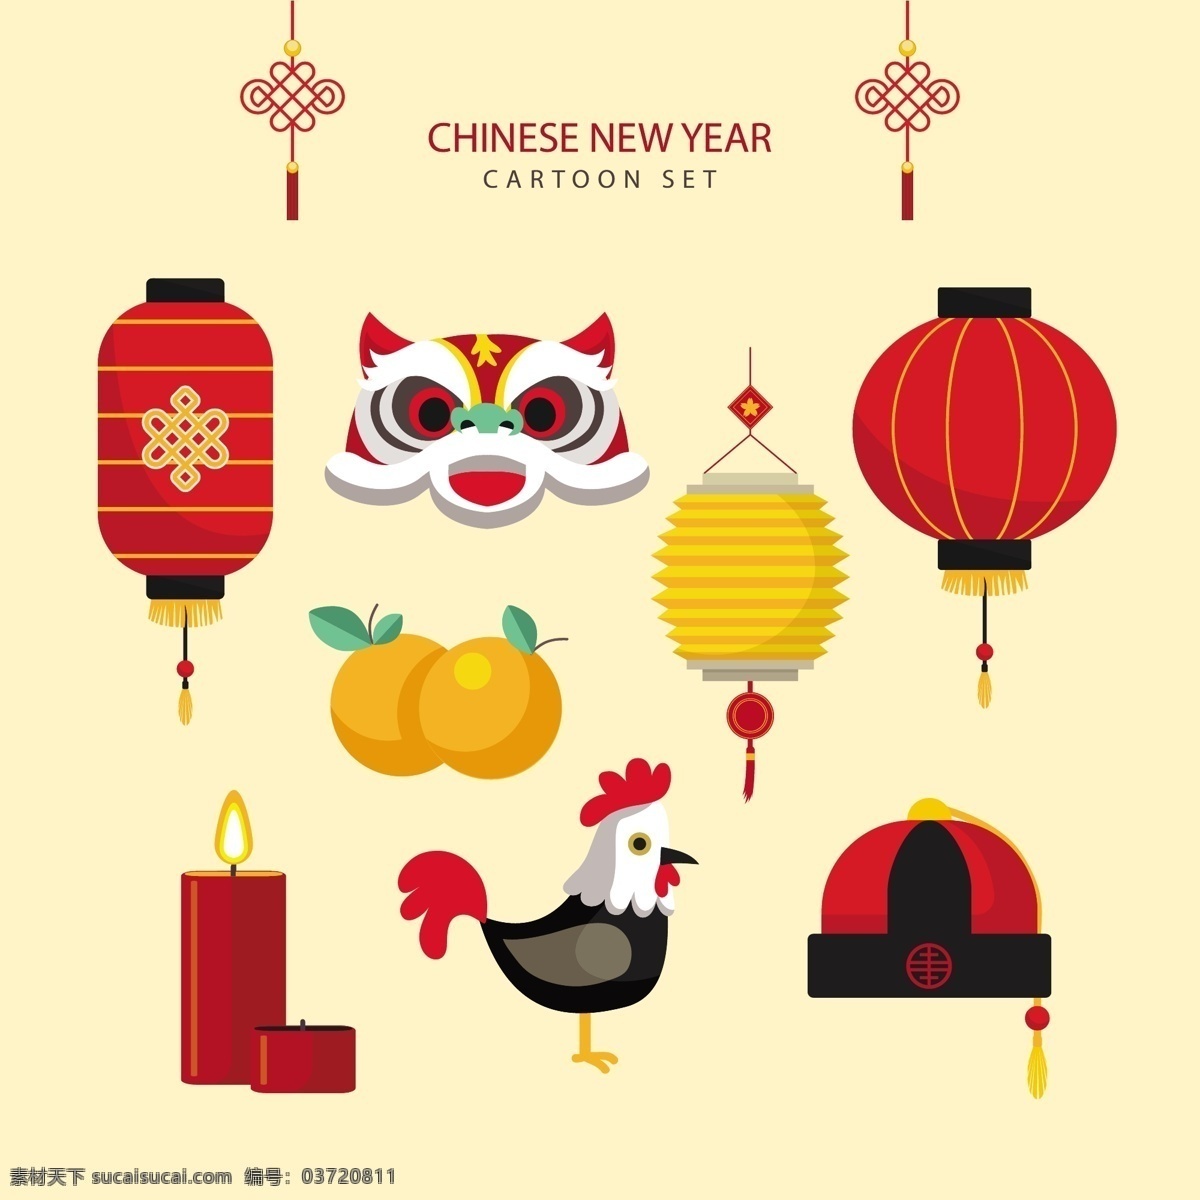 中国 新年 卡通 2018 灯笼 鸡 蜡烛 老虎 帽子 水果 新年素材